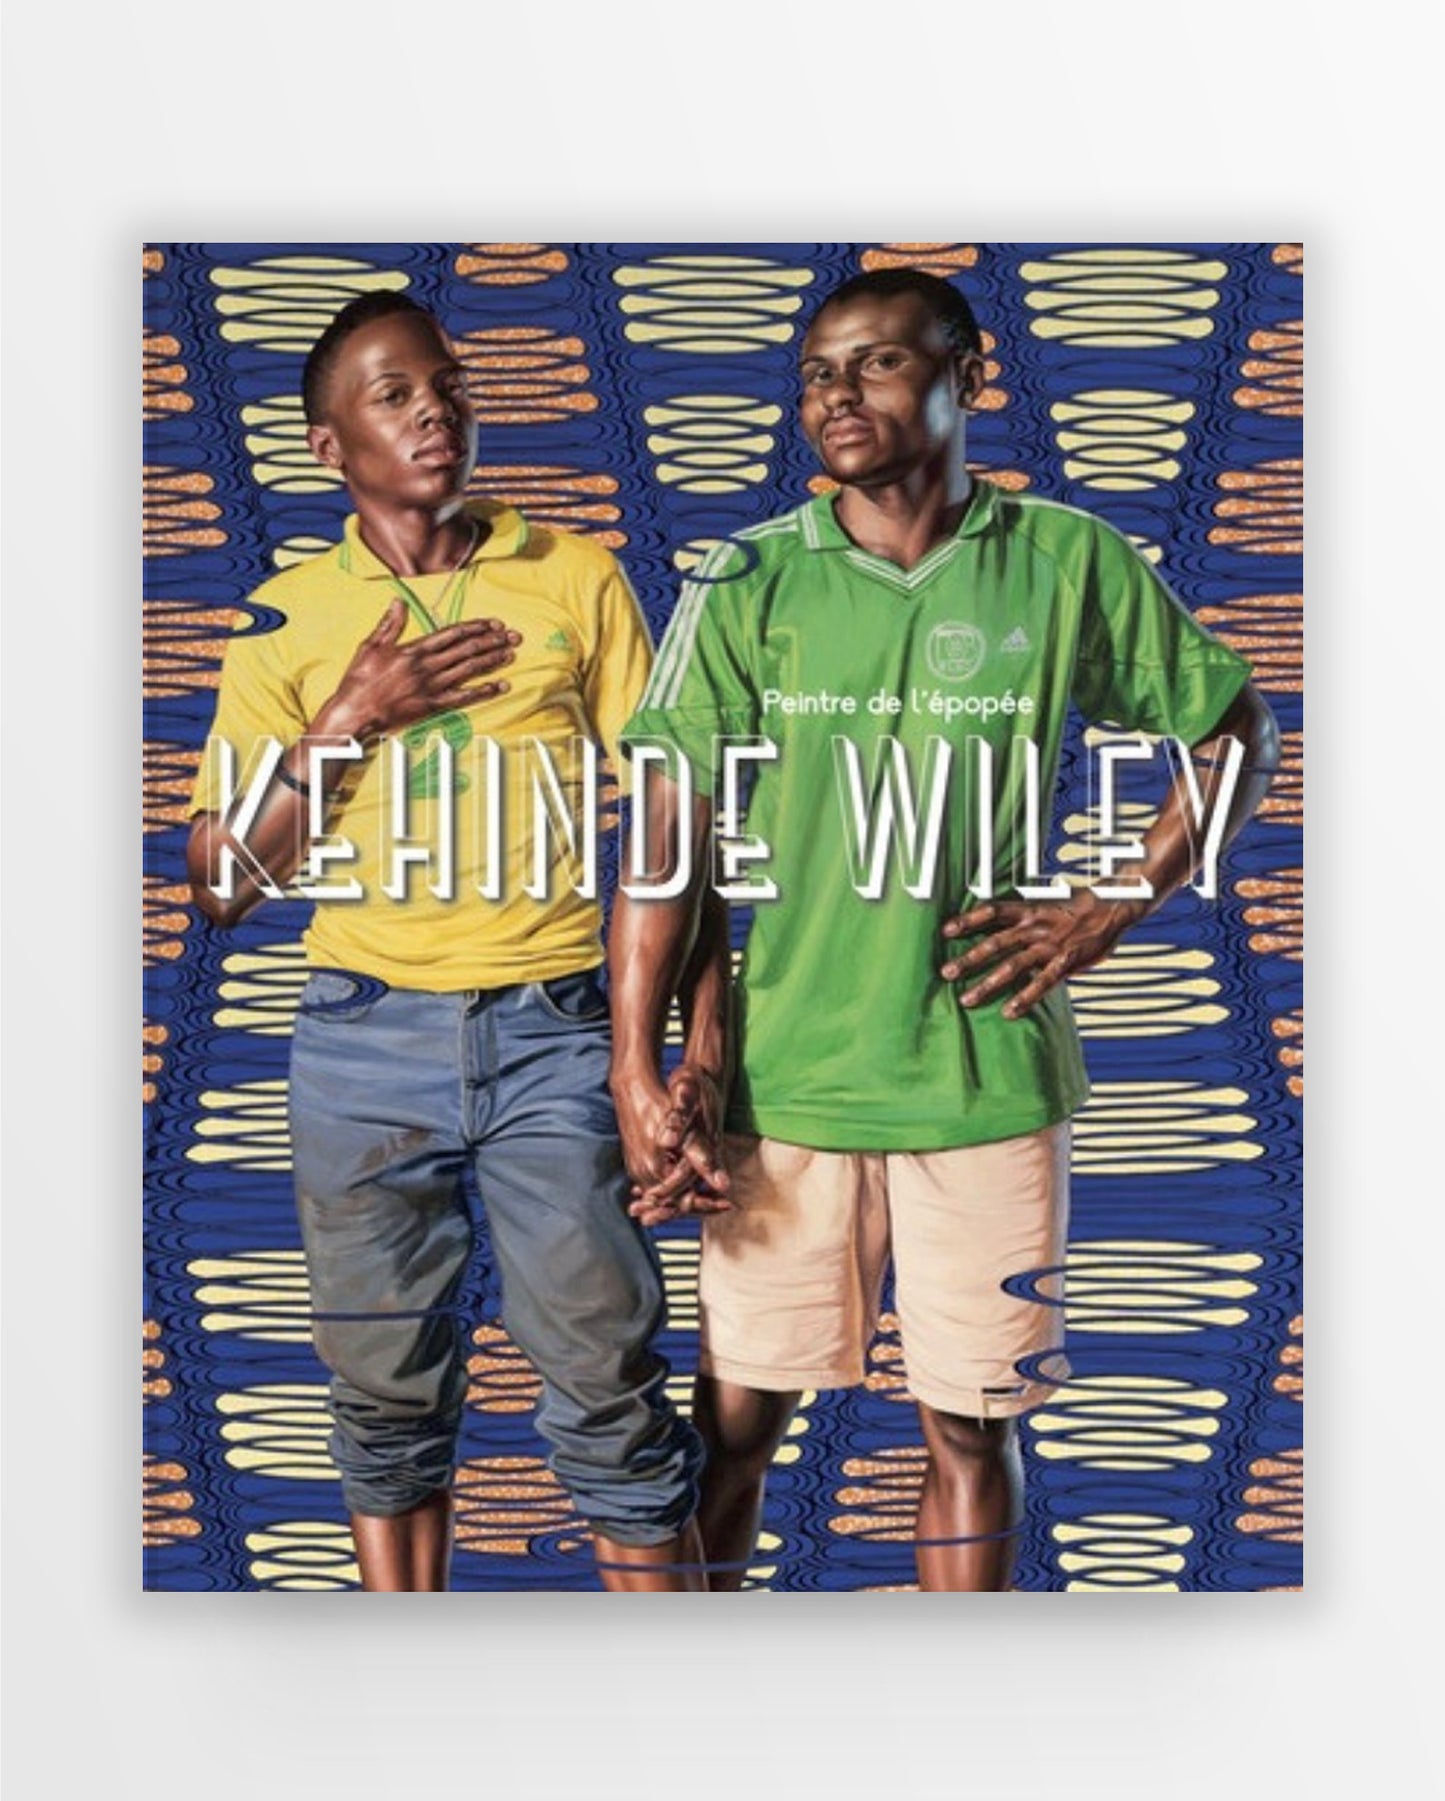 Kehinde Wiley: Peintre de l'épopée